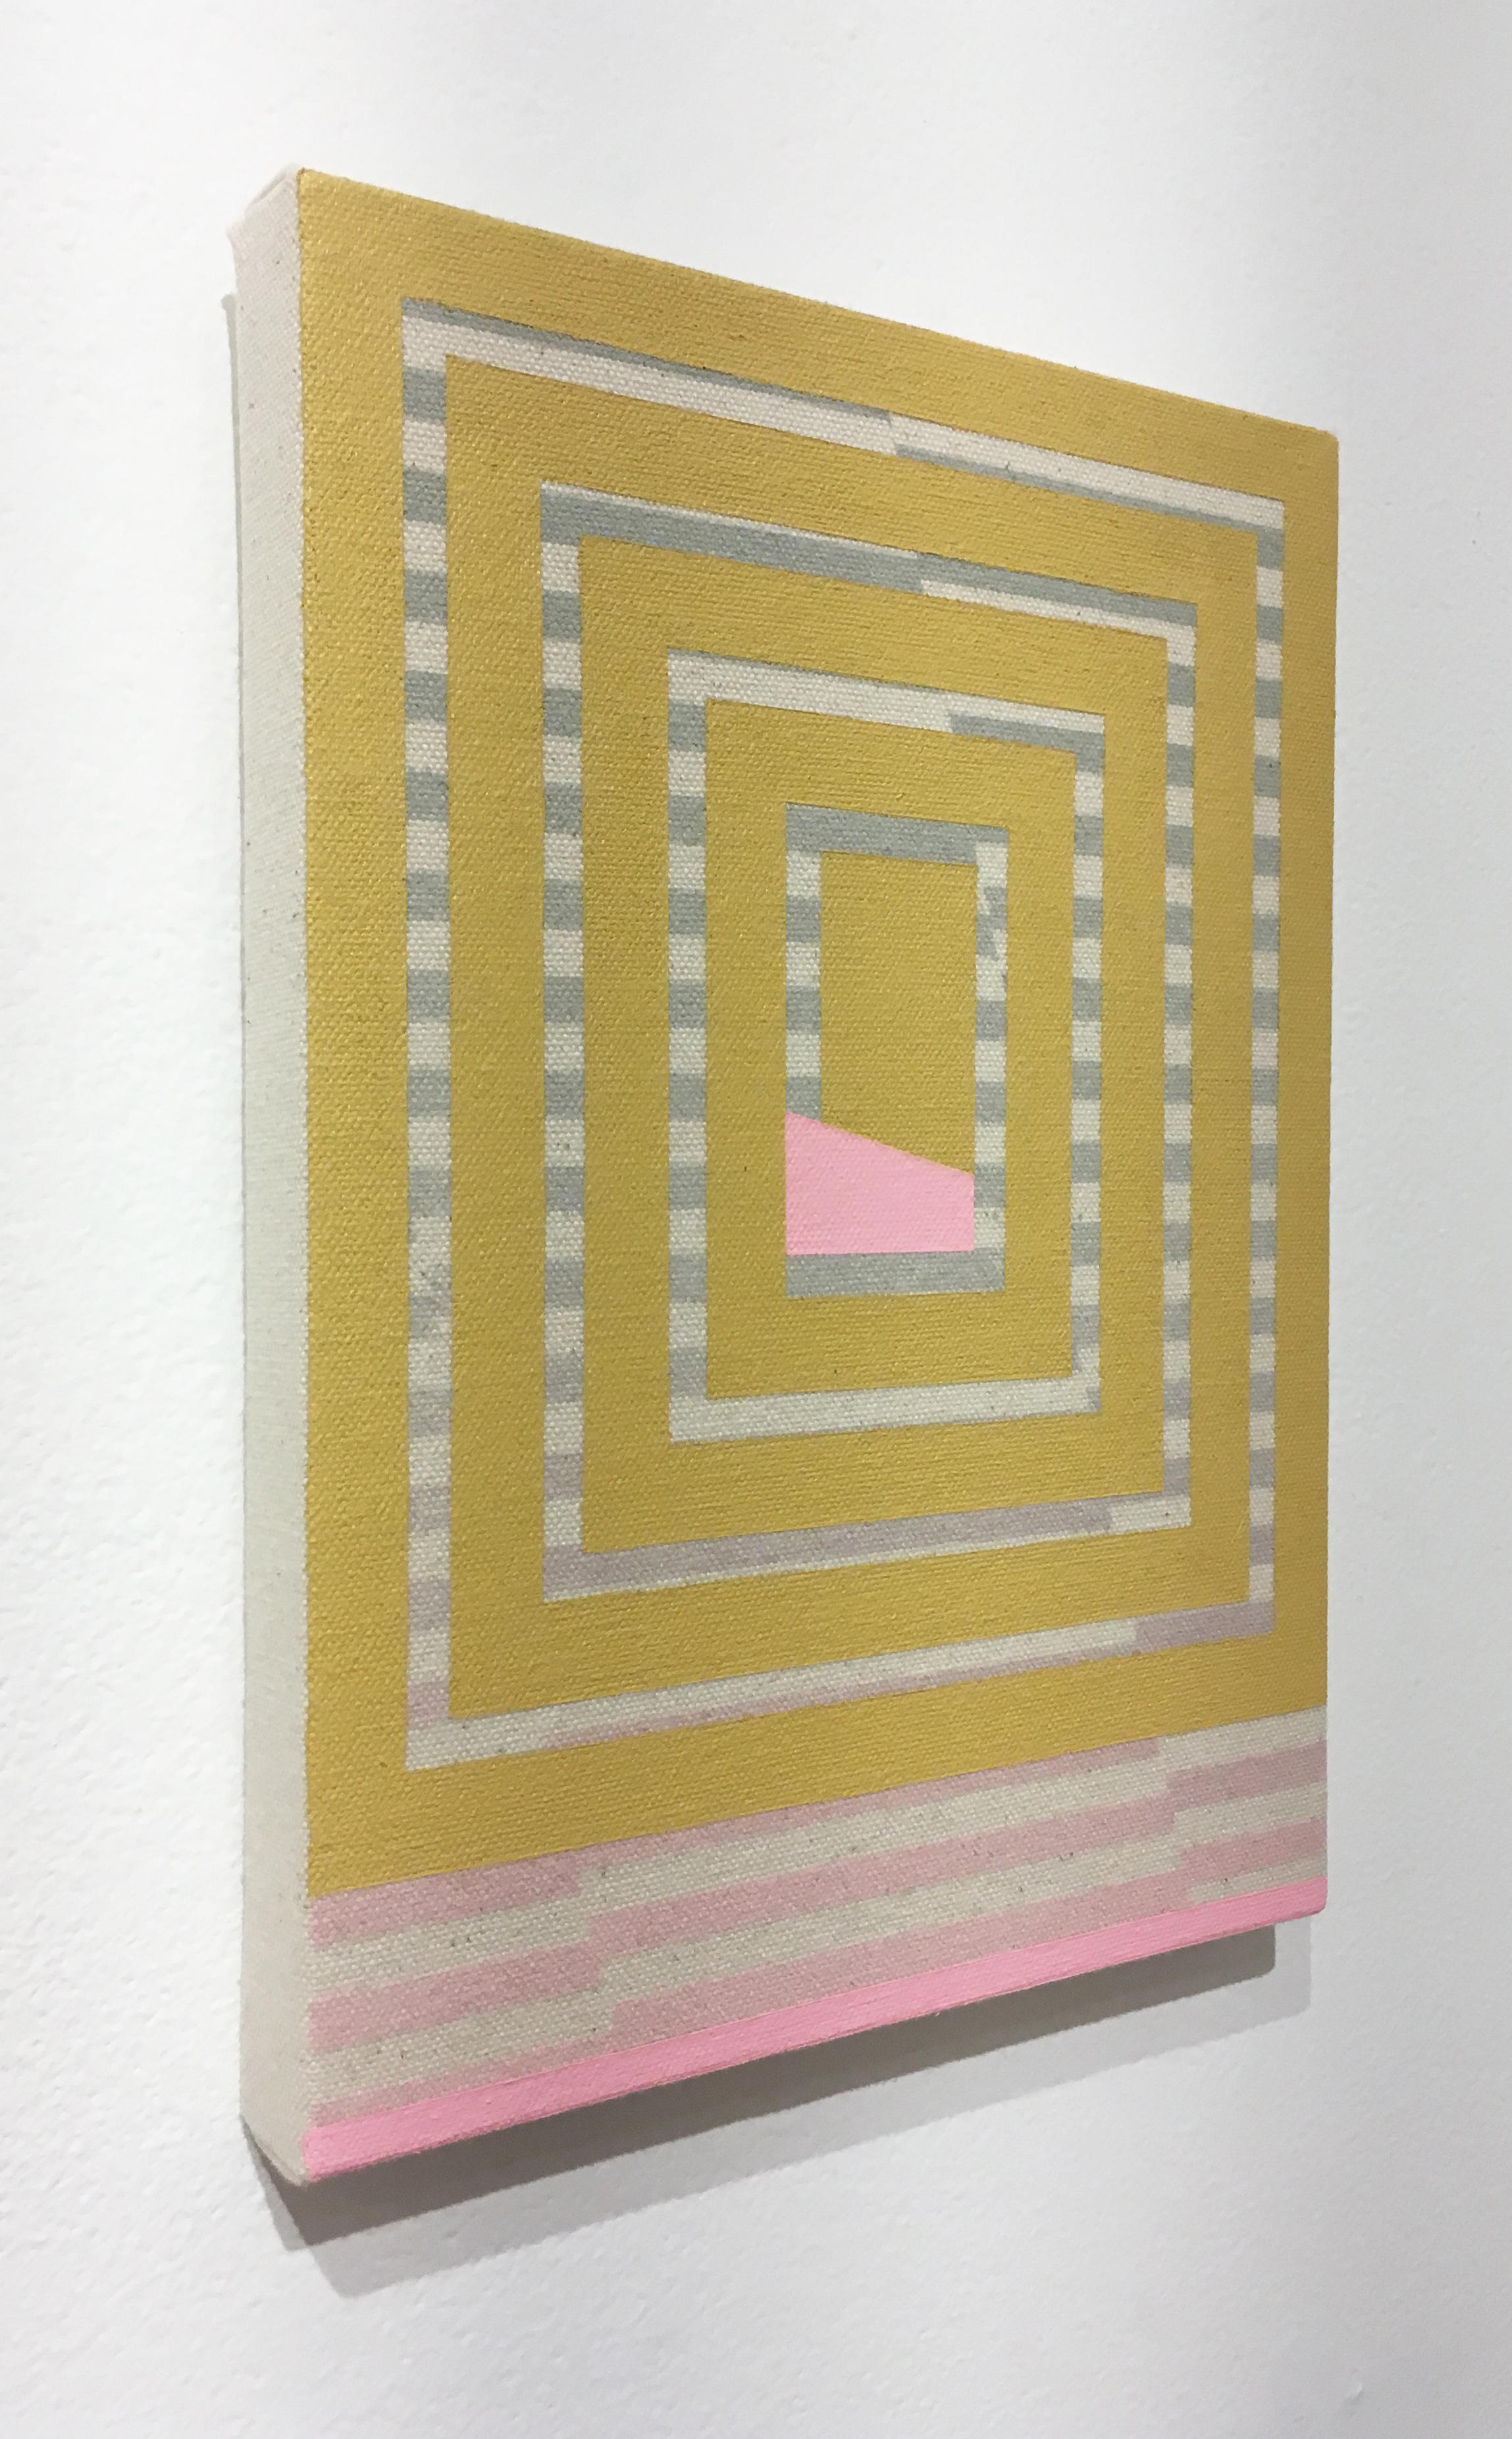 Breathing, Acryl, Sprühfarbe auf Leinwand, abstraktes geometrisches, gelb-grau-rosa (Geometrische Abstraktion), Mixed Media Art, von Alex McClurg